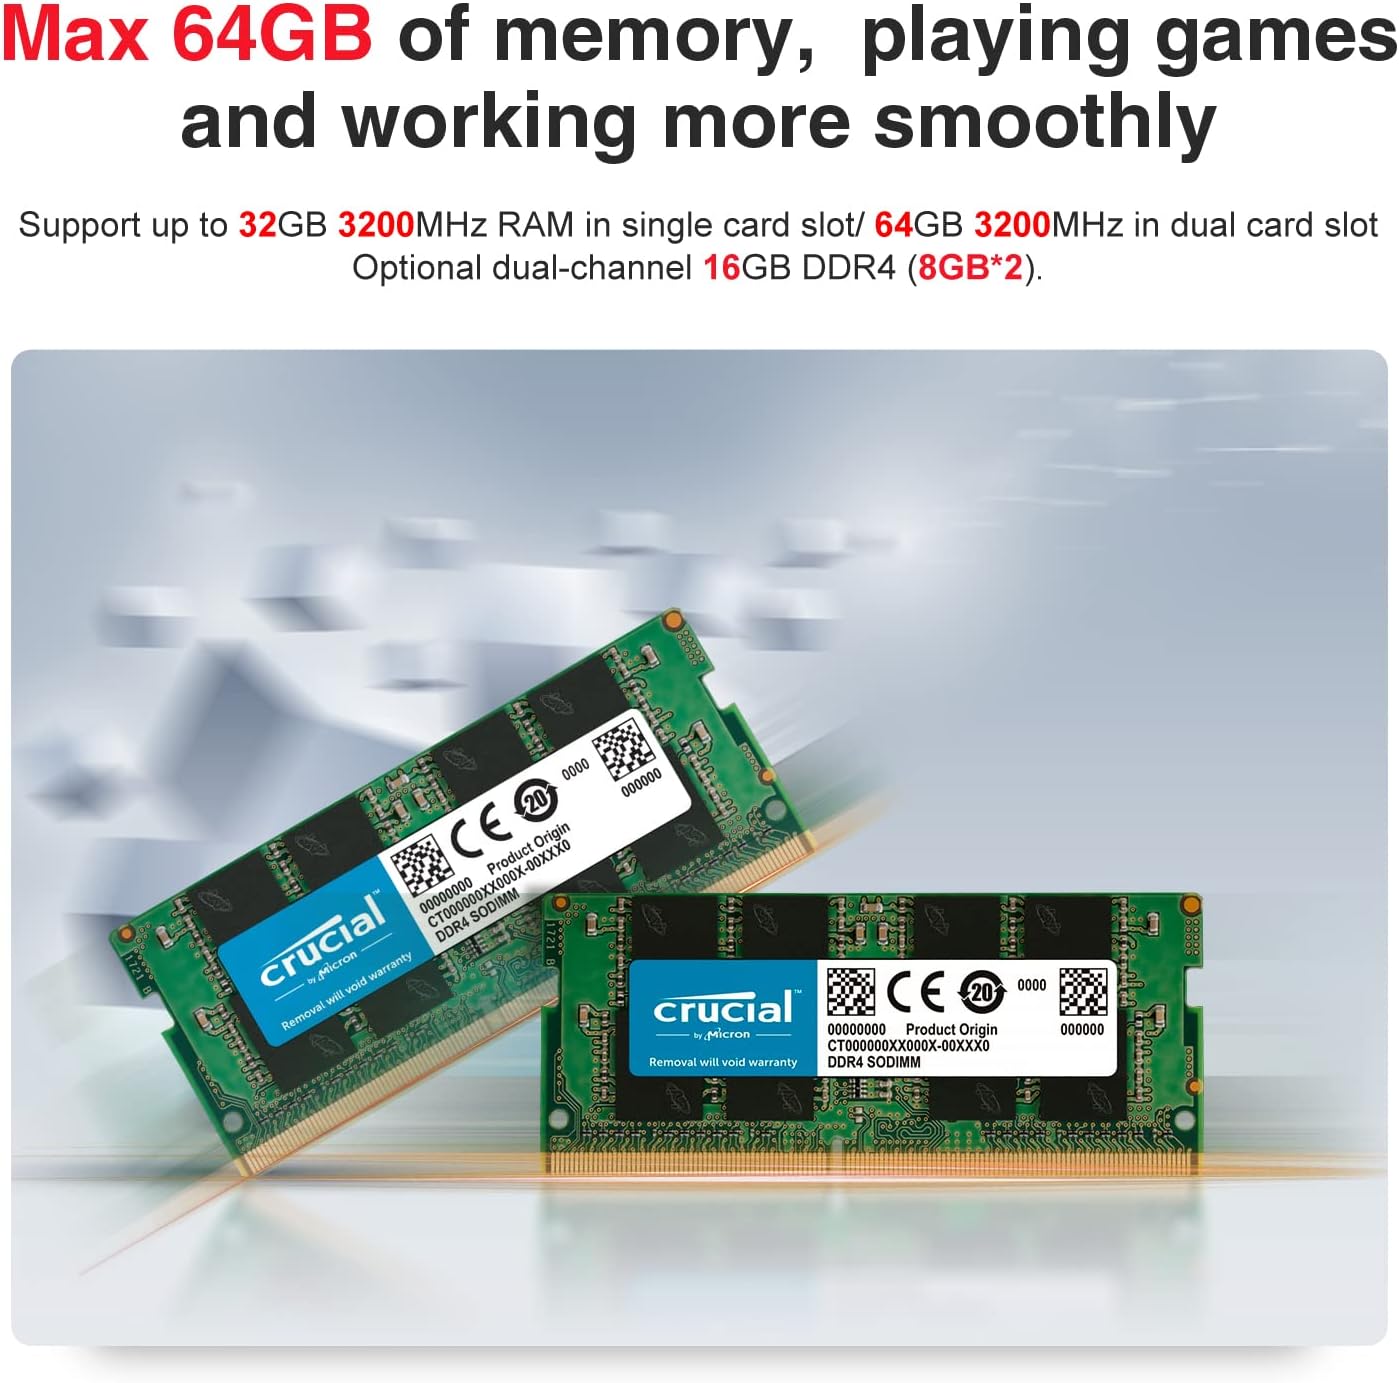 TRIGKEY S5 Pro Max AMD Ryzen 7 Mini PC Desktop AMD 8C16T 5700U 16G DDR4 500G NVME SSD Micro Computer, Support Mini Computer W10 Pro, 4K@60/144Hz HD Triple Display, DP 144Hz, WiFi 6, BT 5.2, USB 3.2